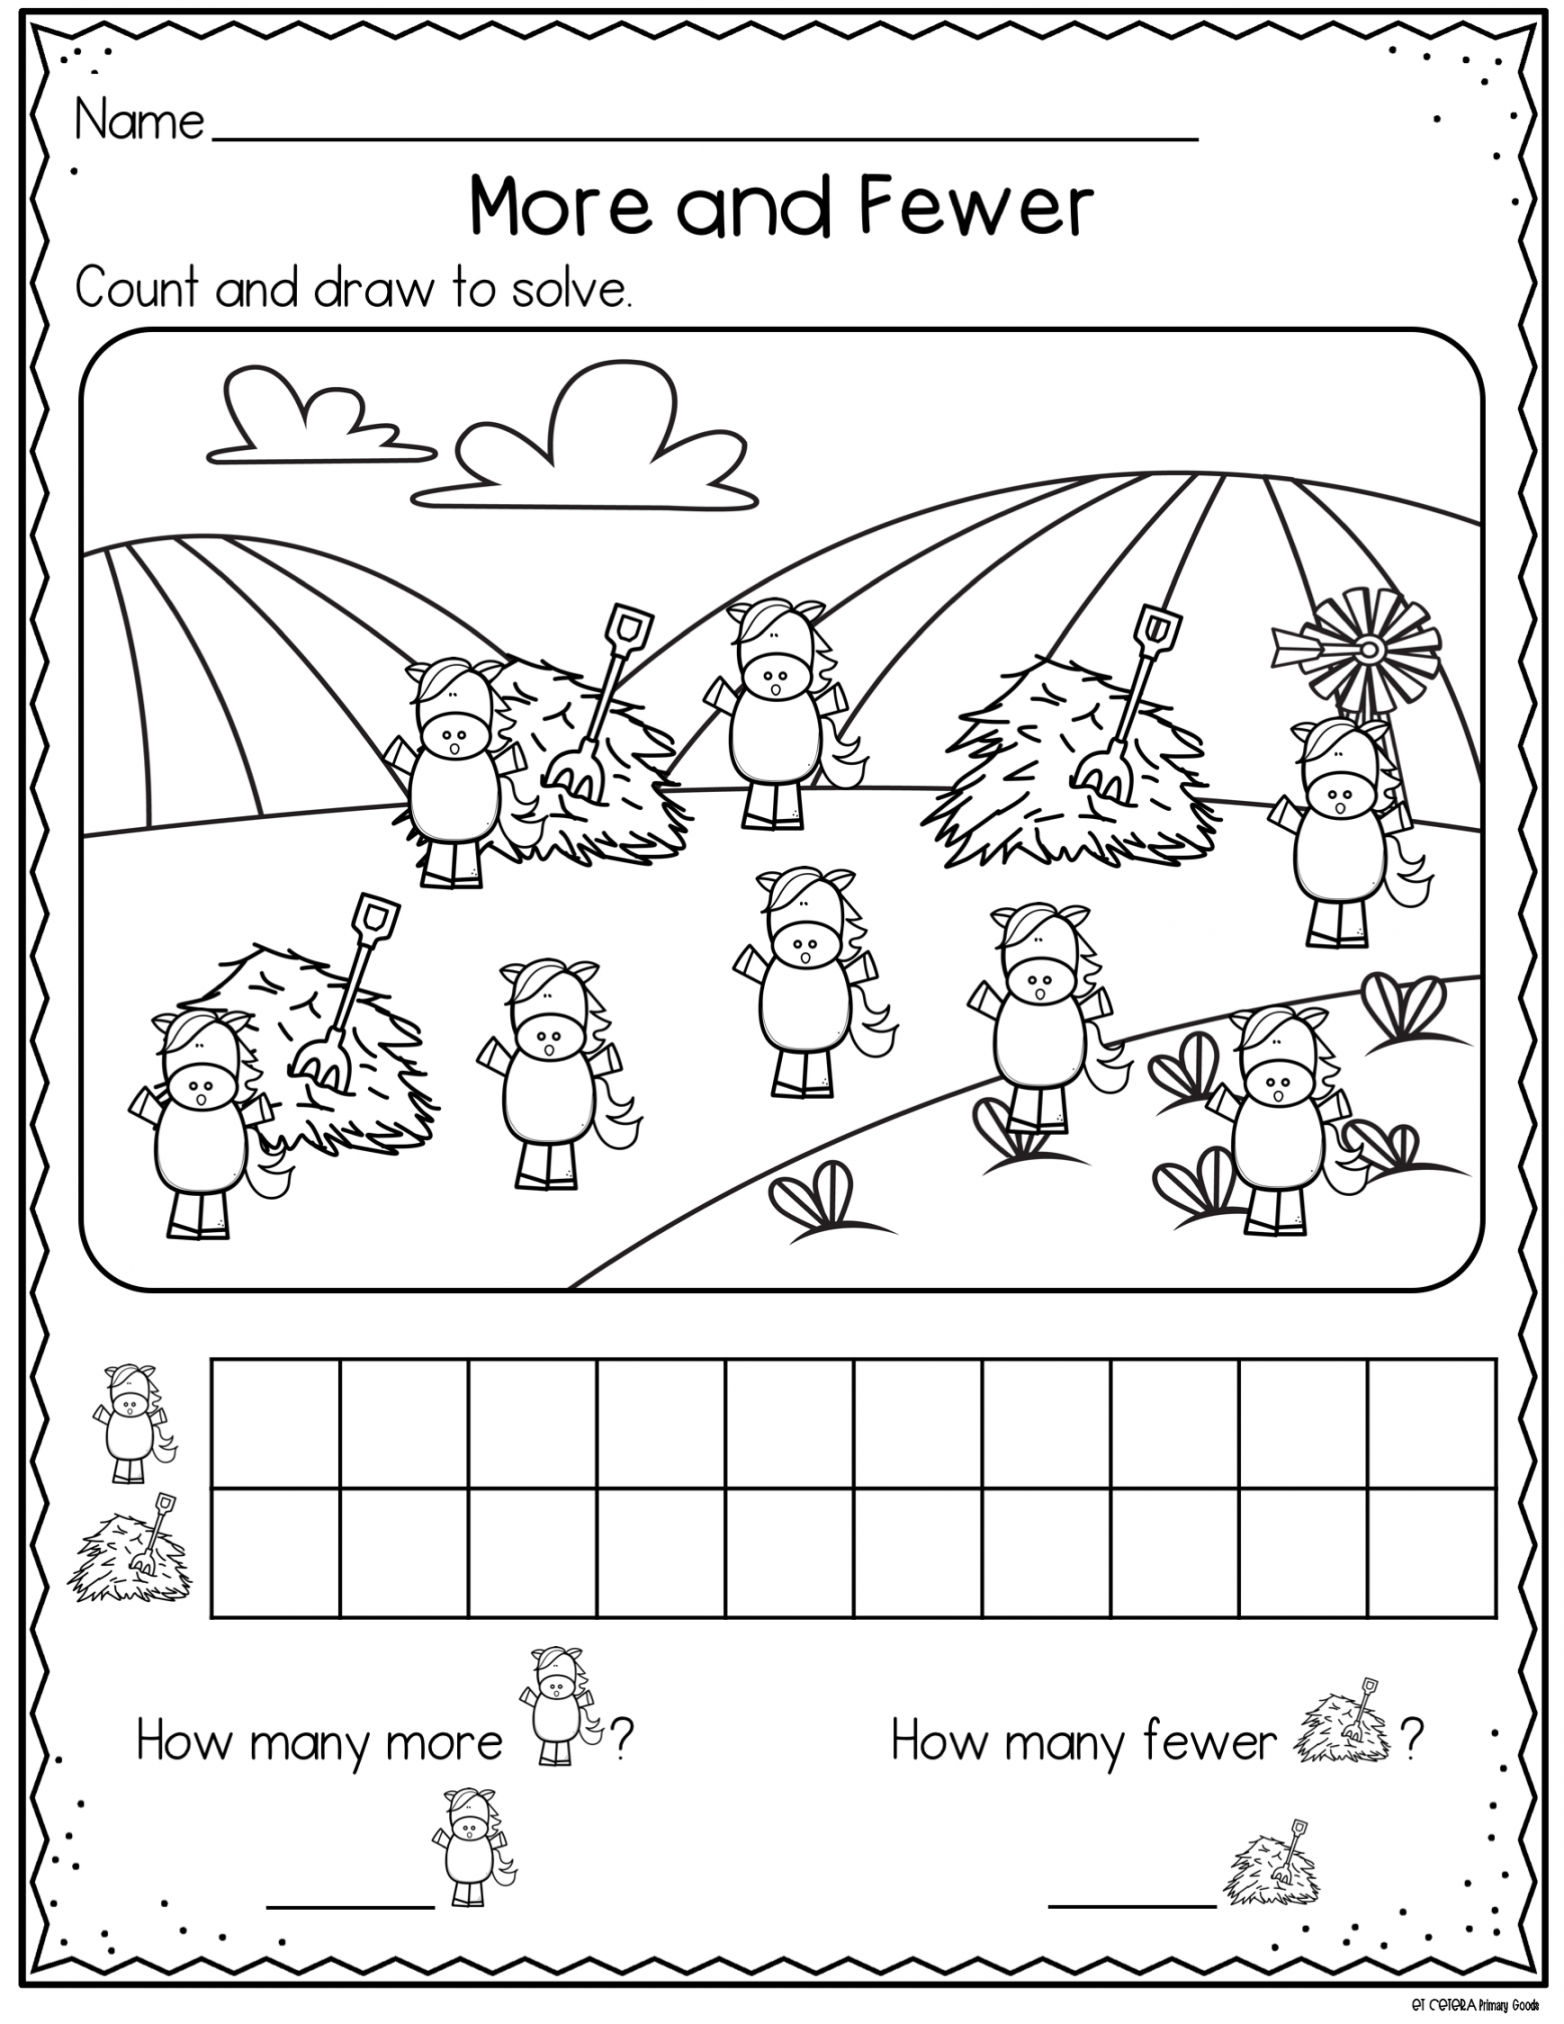 More and Fewer Comparing Sets  Kindergarten worksheets, Kinder